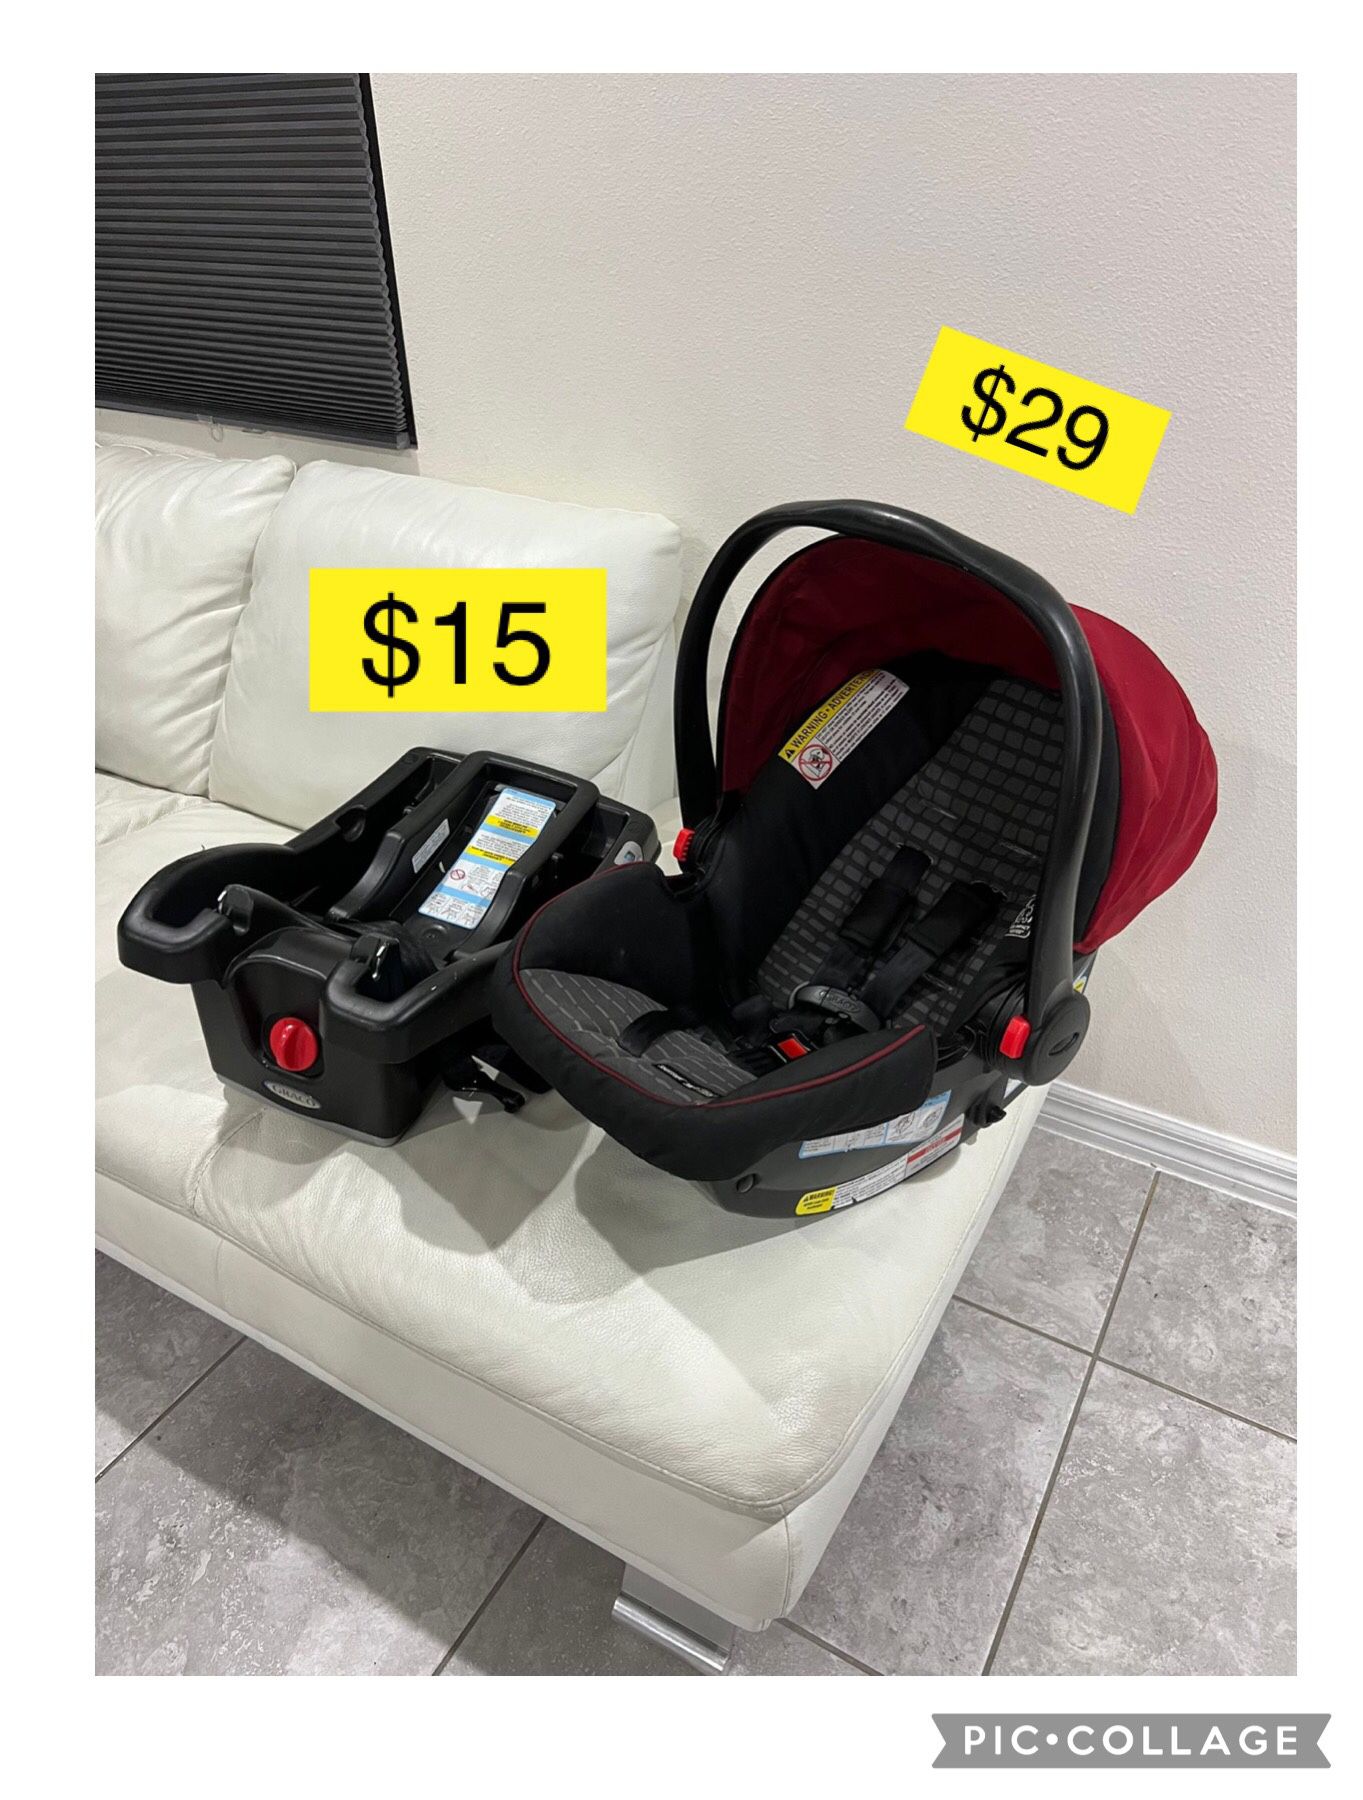 Graco Infant car seat $29, base $15 / Porta bebe carro, silla $29, base $15